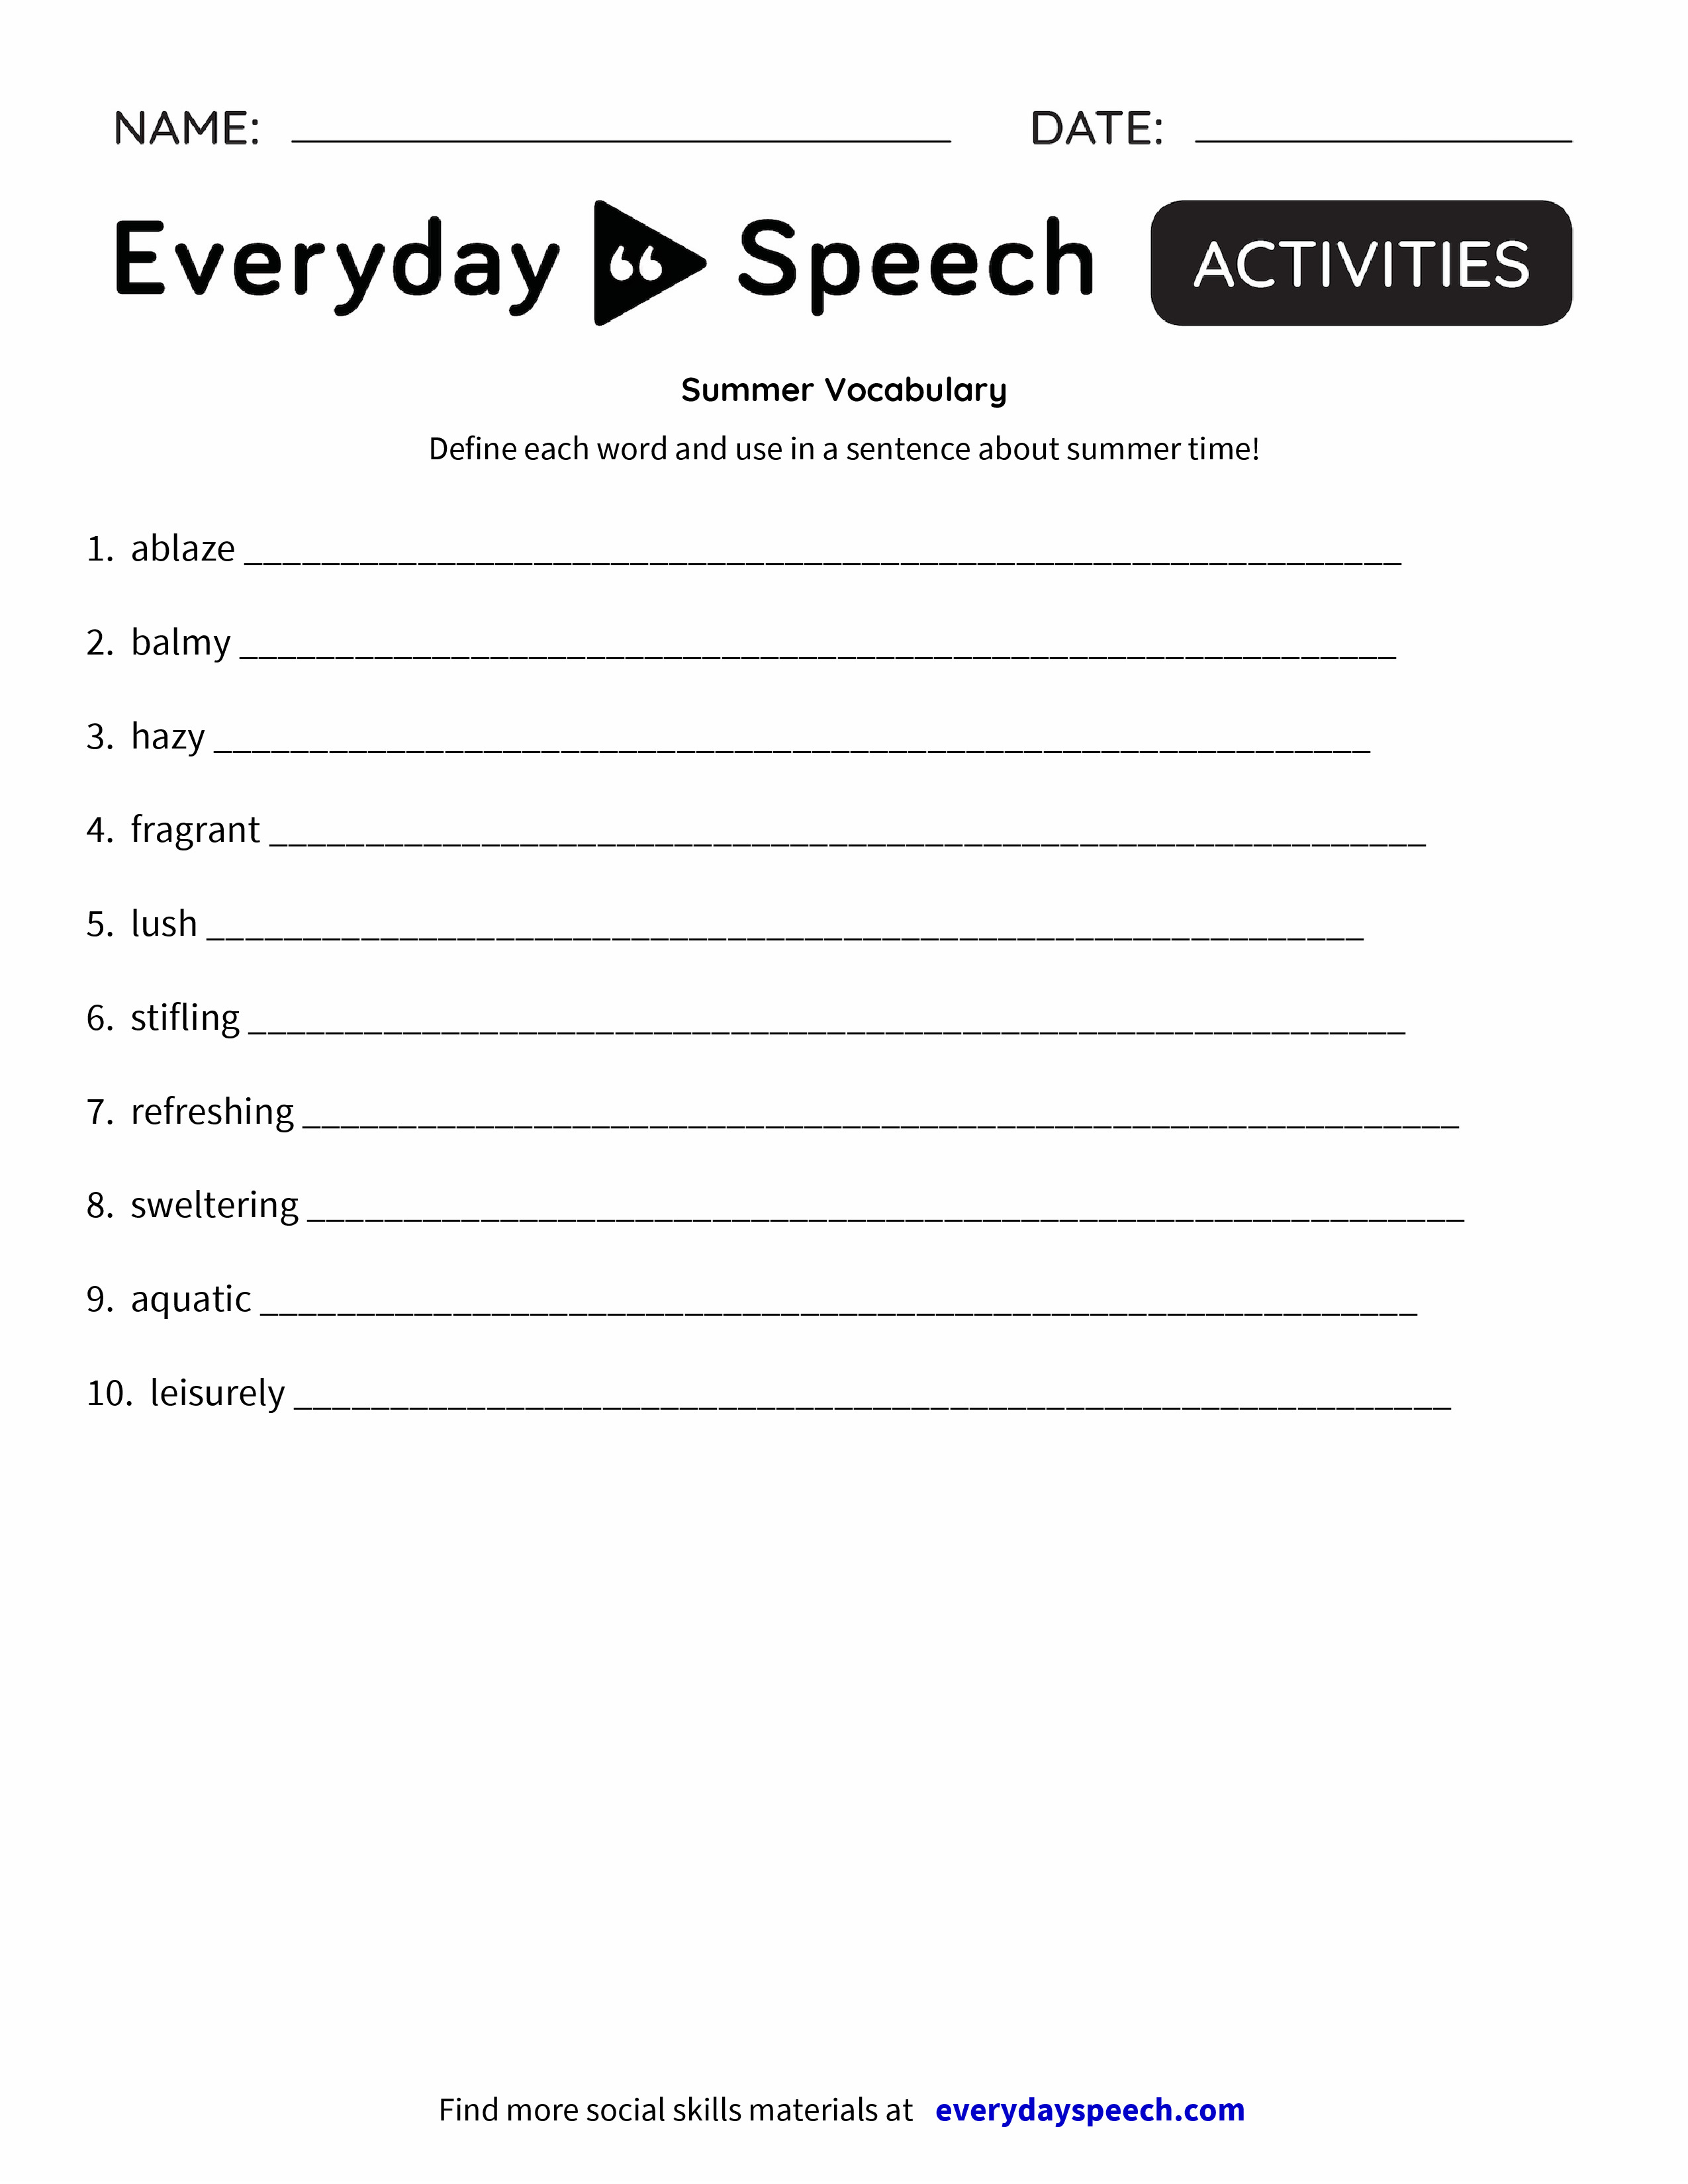 Summer Vocabulary - Everyday Speech - Everyday Speech